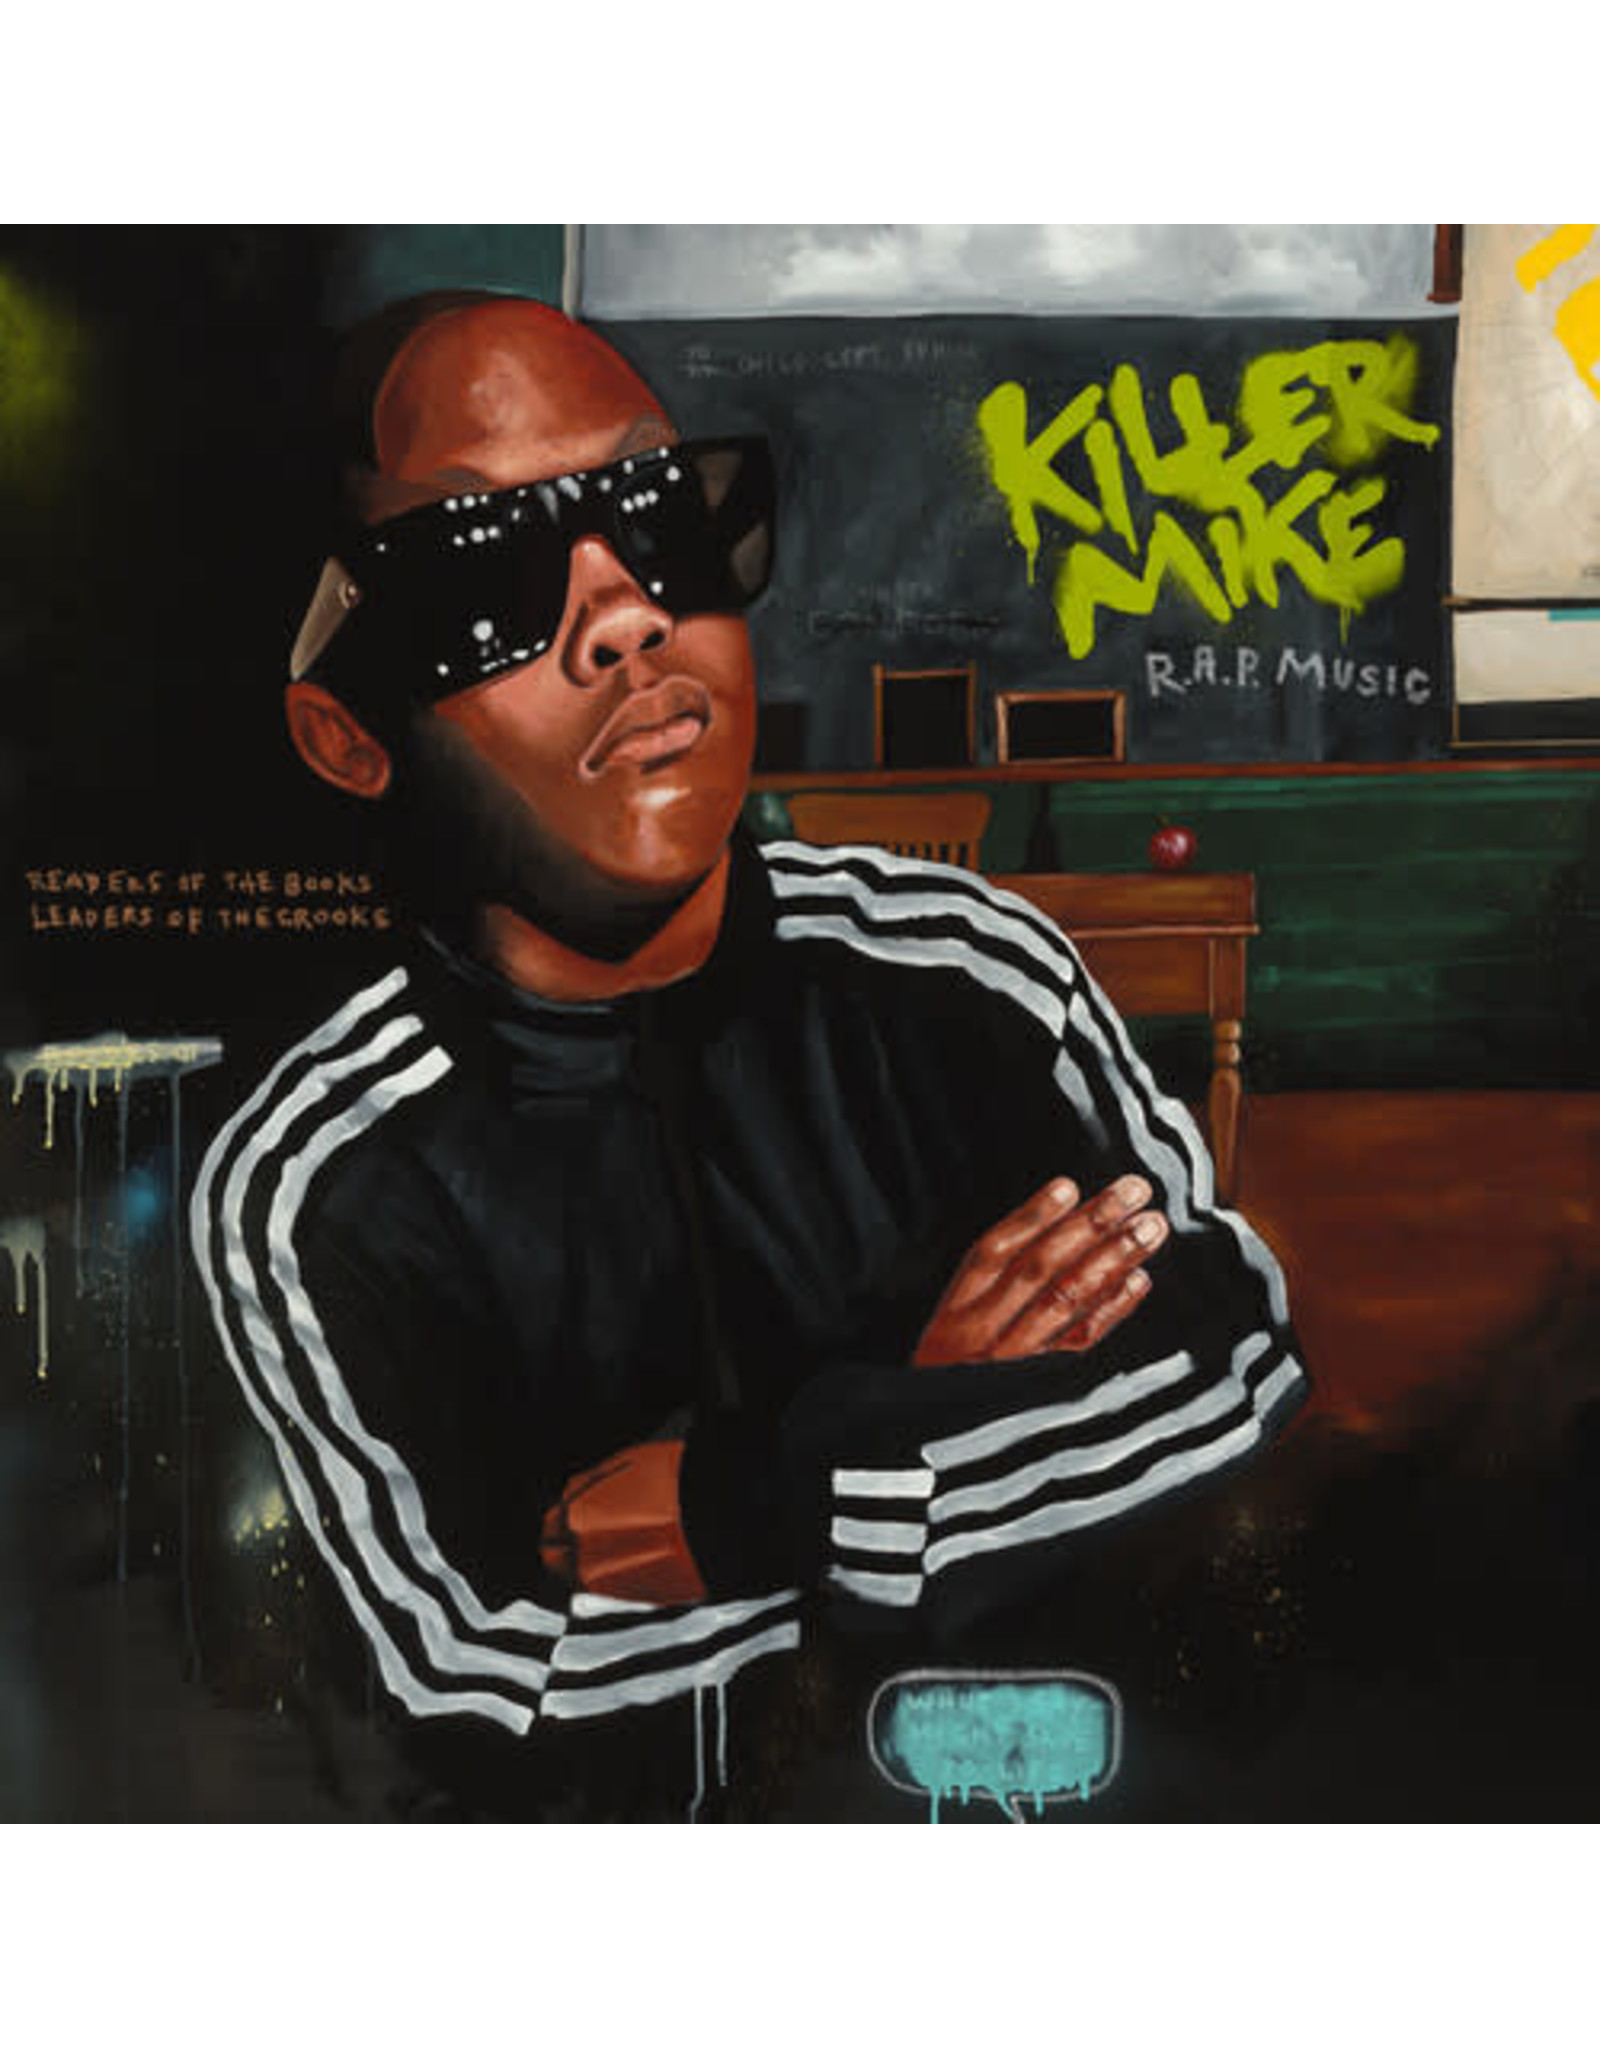 New Vinyl Killer Mike - RAP Music 2LP